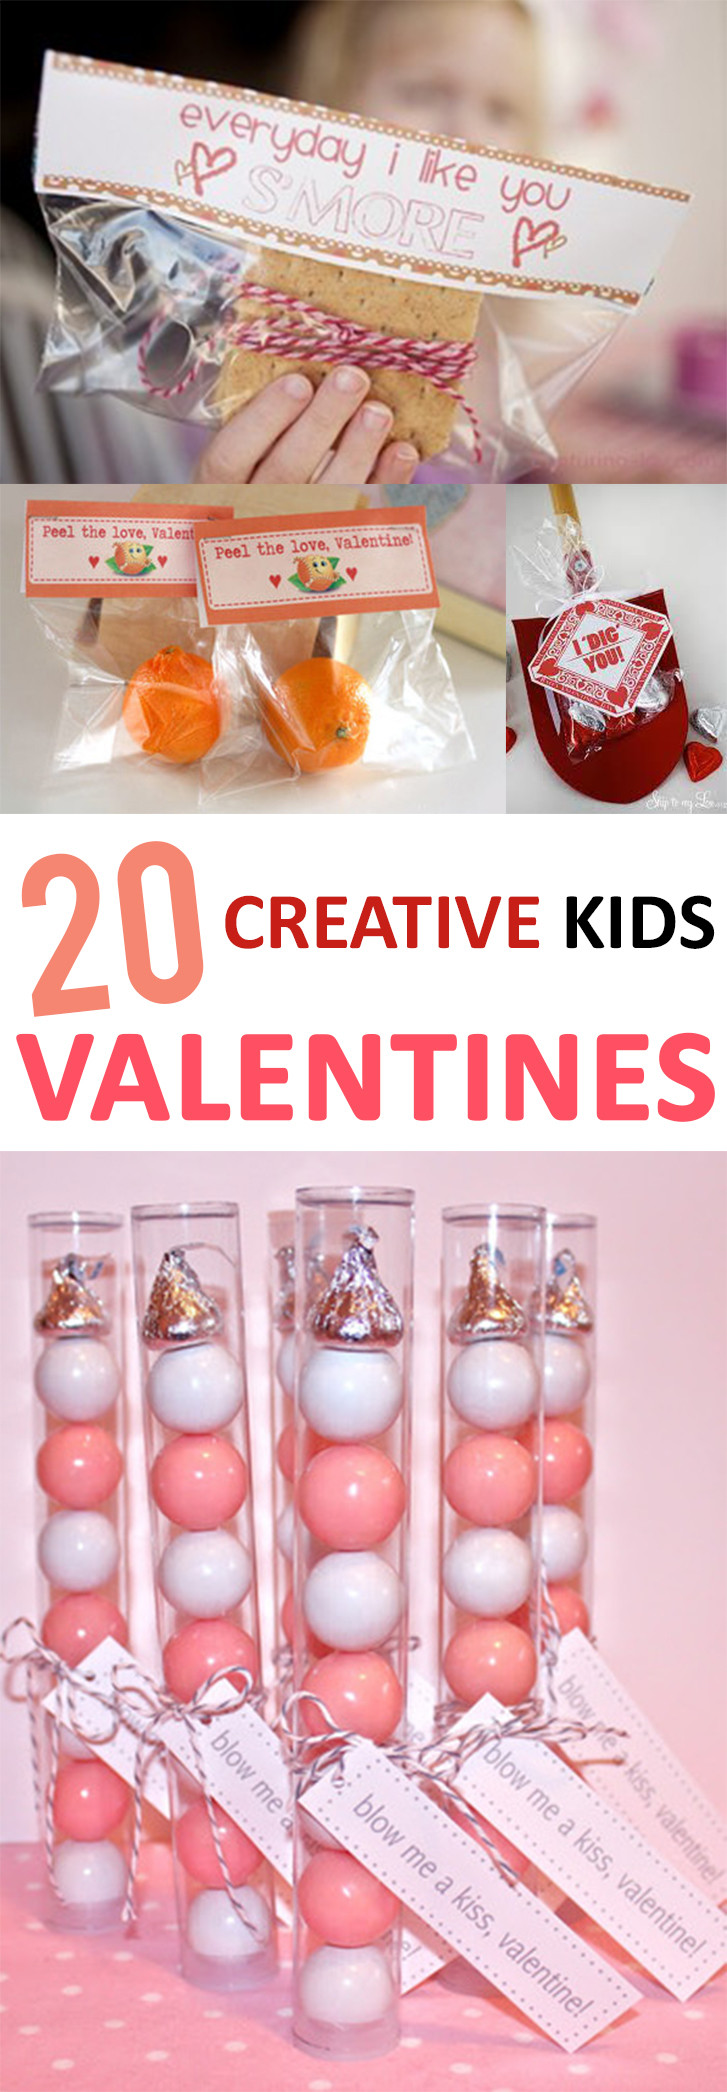 Valentine Creative Gift Ideas
 20 Creative Kid s Valentines